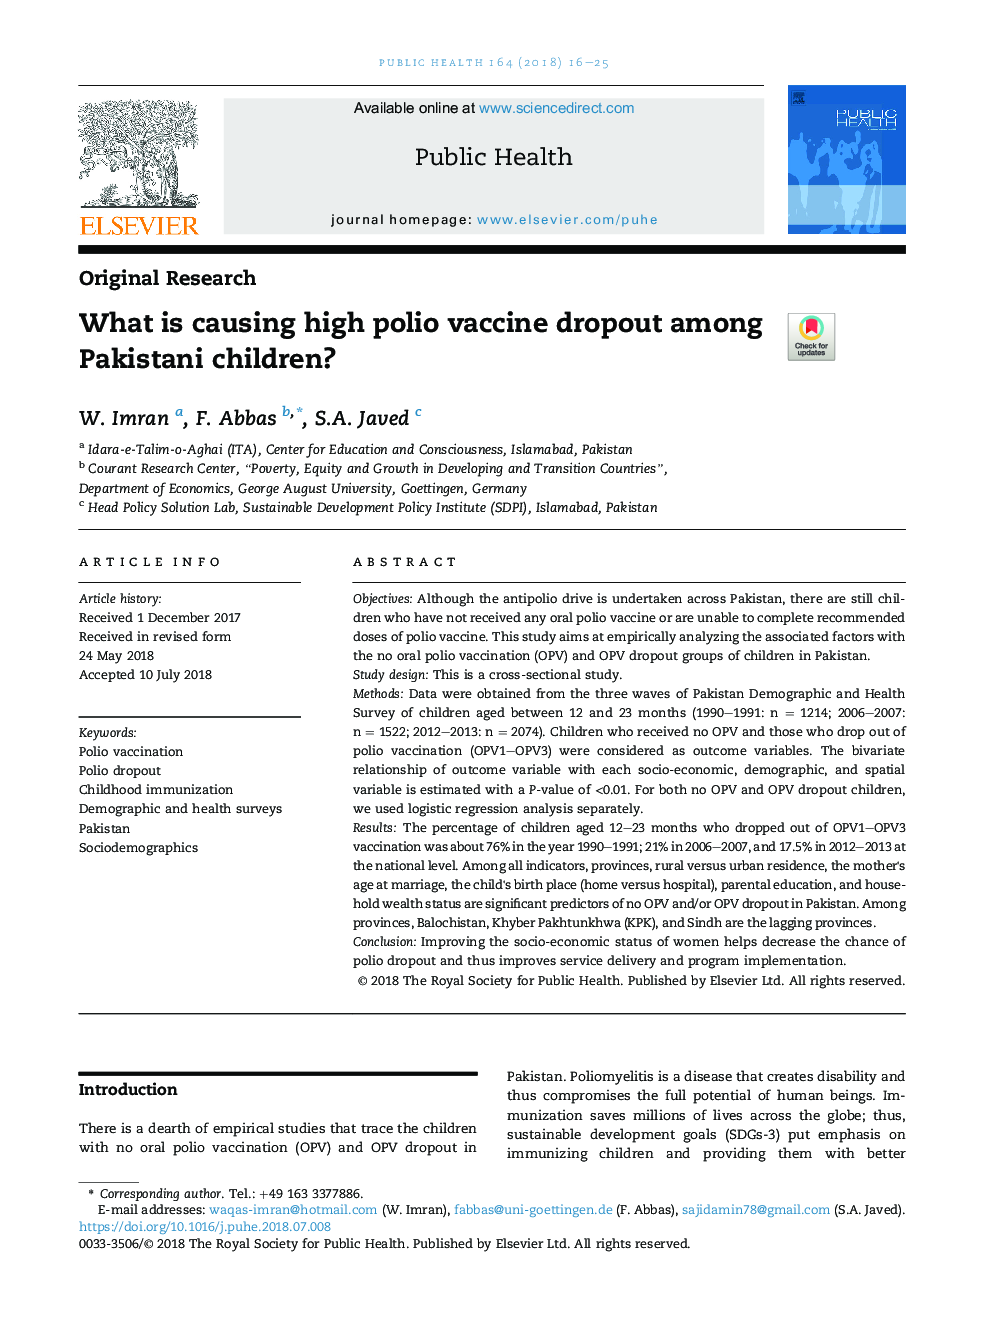 چه چیزی باعث واکسیناسیون واکسن فلج اطفال در میان کودکان پاکستانی می شود؟